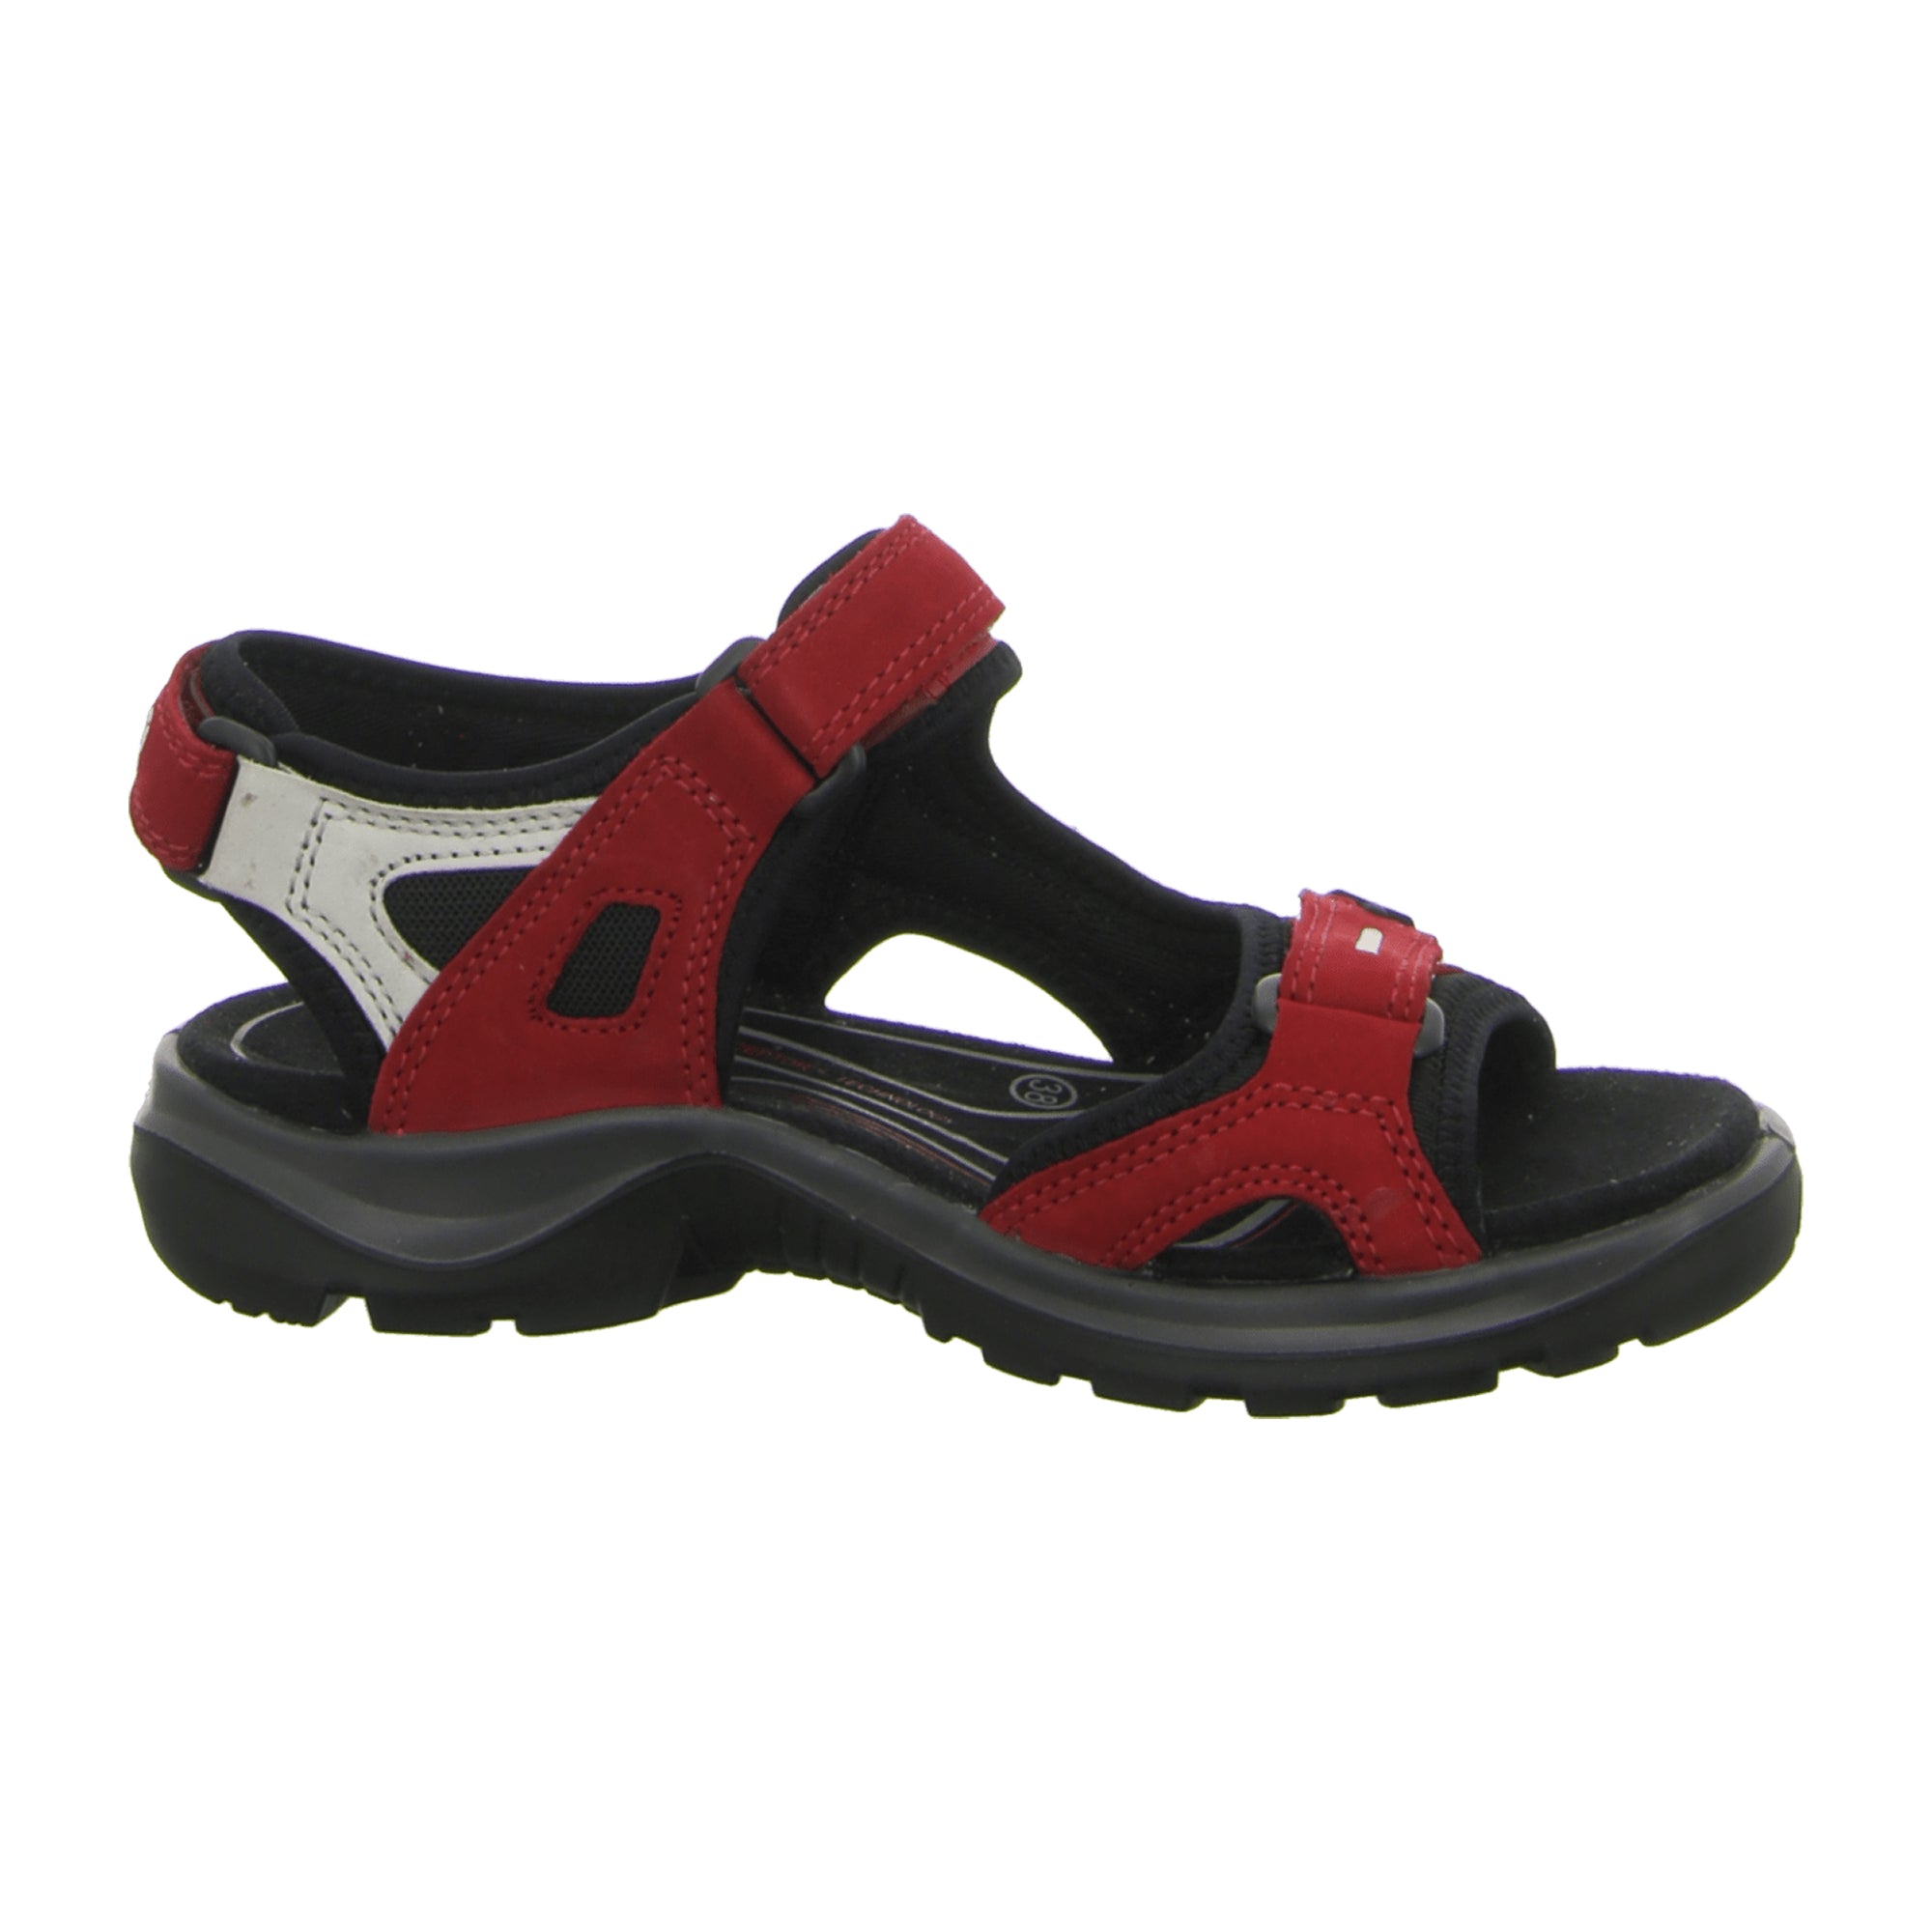 Ecco OFFROAD Women's Adventure Sandals, Red